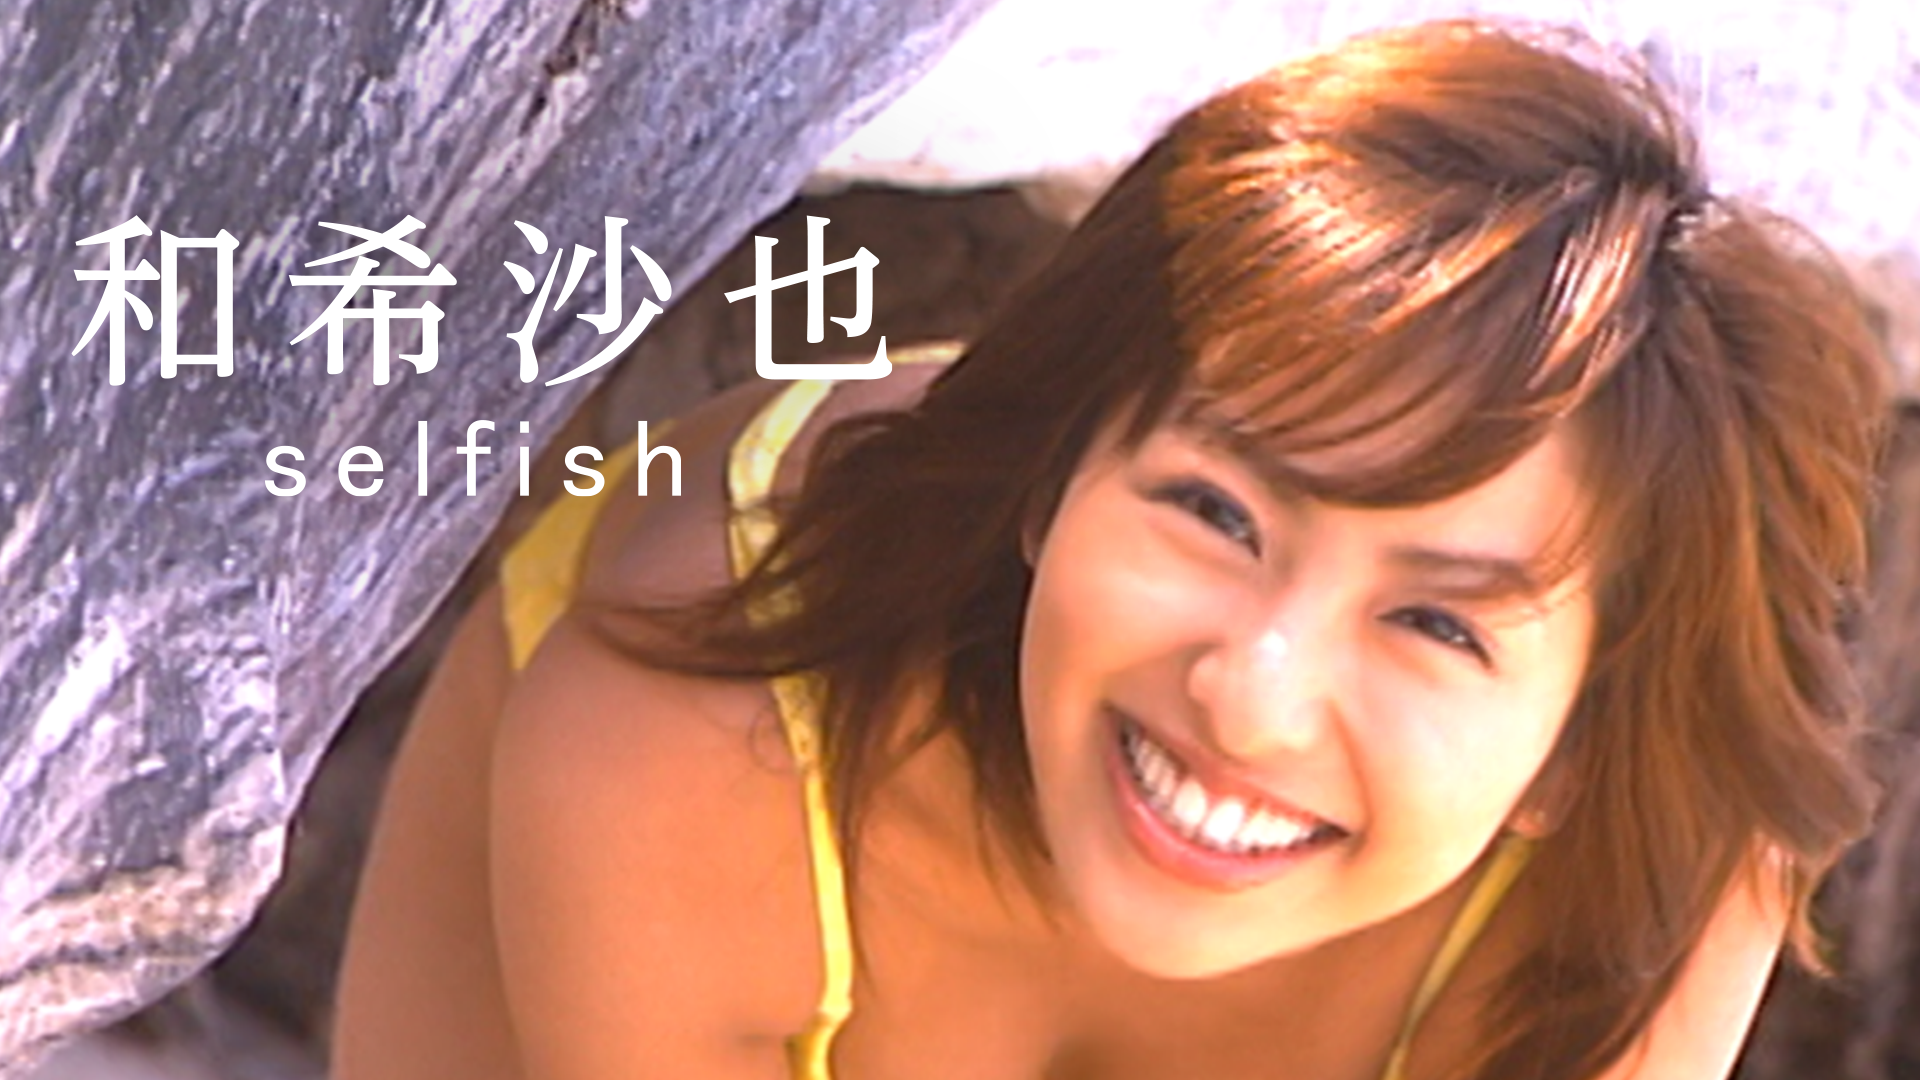 和希沙也『selfish』(その他♡ / 2003) - 動画配信 | U-NEXT 31日間無料トライアル